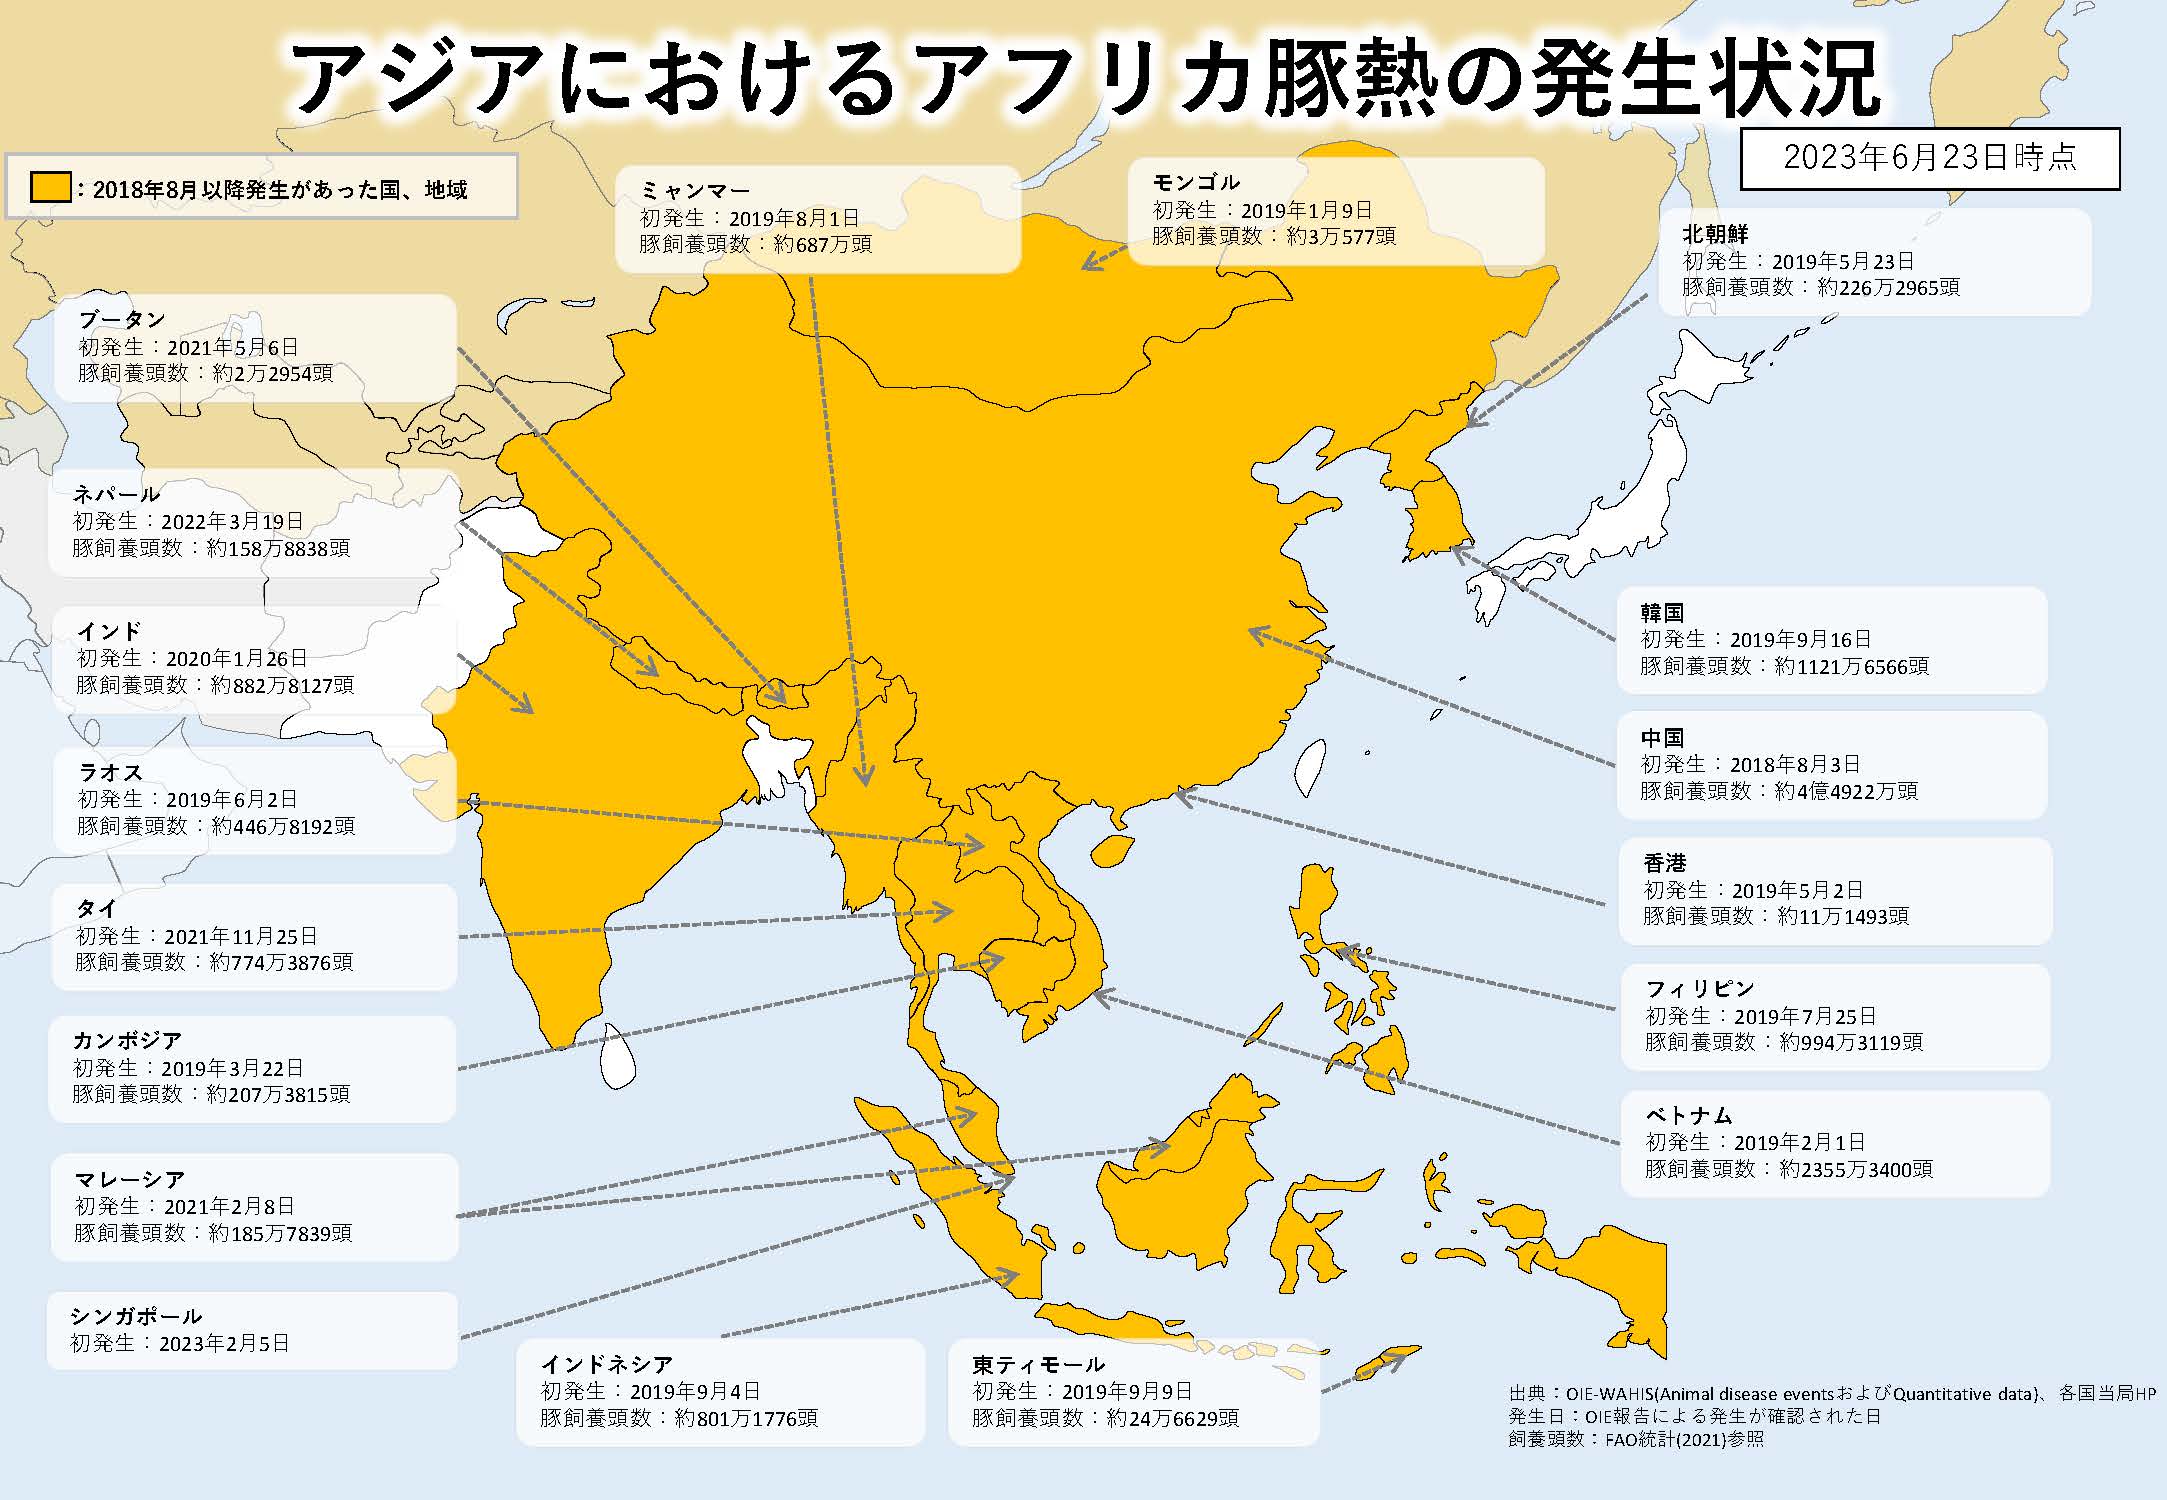 2023年6月23日現在のアジアにおけるASFの発生状況を示した地図のイラスト（提供は農林水産省）